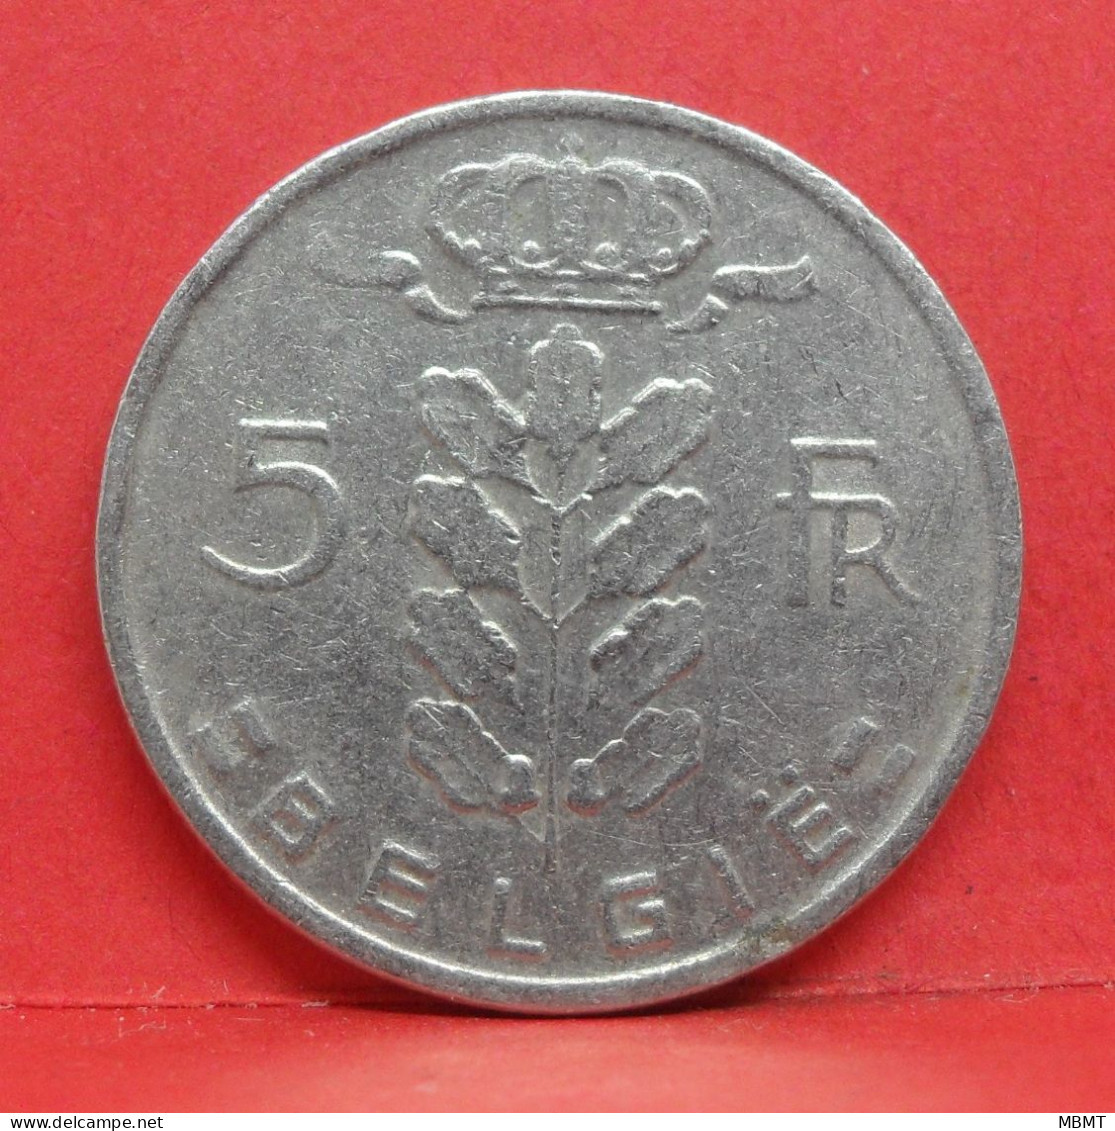 5 Frank 1968 - TB - Pièce Monnaie Belgie - Article N°1990 - 5 Francs